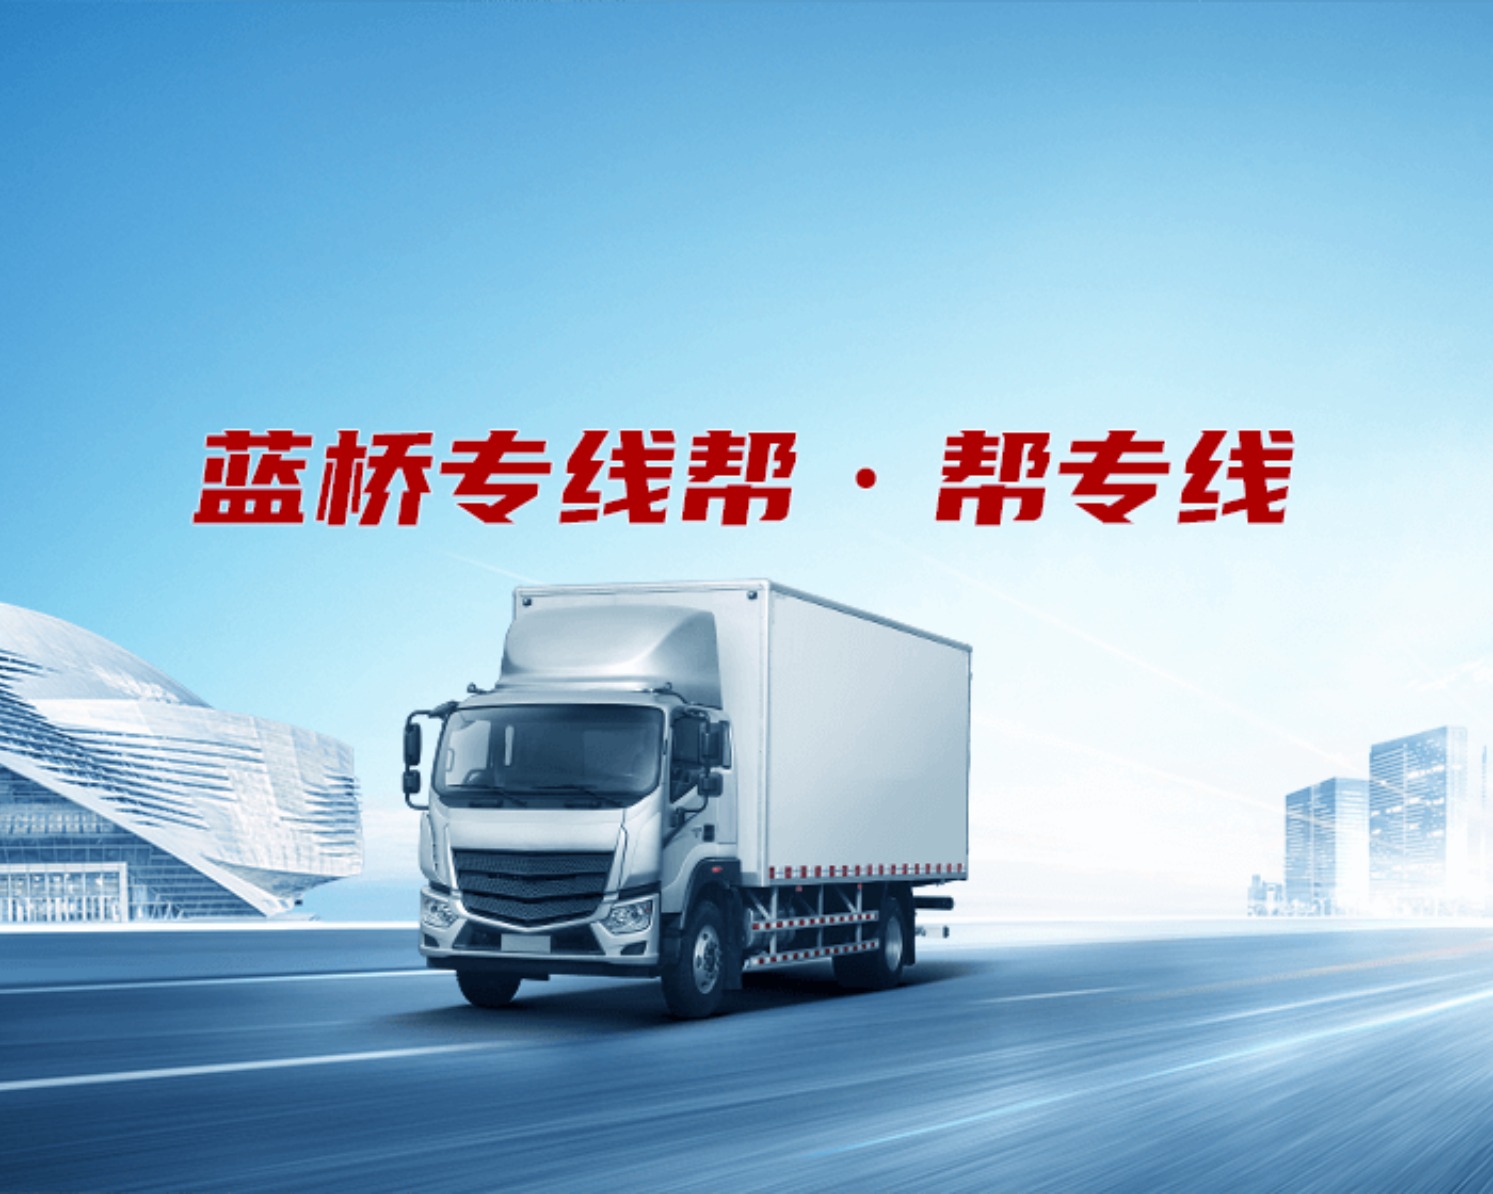 广州市新韶安货运有限公司的专线公司的形象展示LOGO